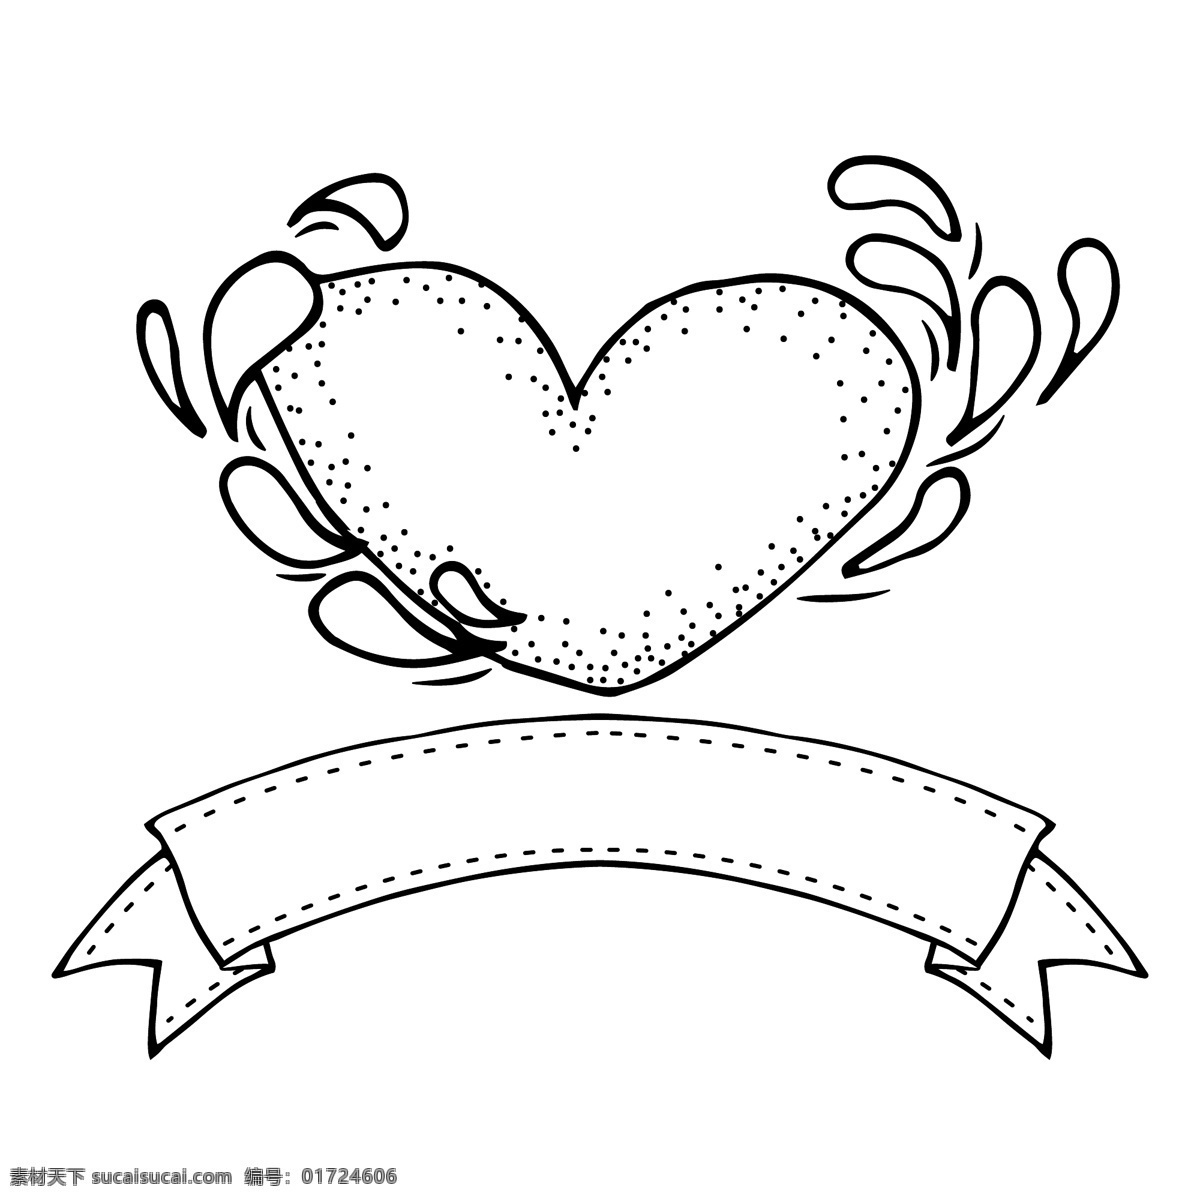 水珠 爱心 卡通 矢量 爱情 黑色 平面素材 设计素材 矢量素材